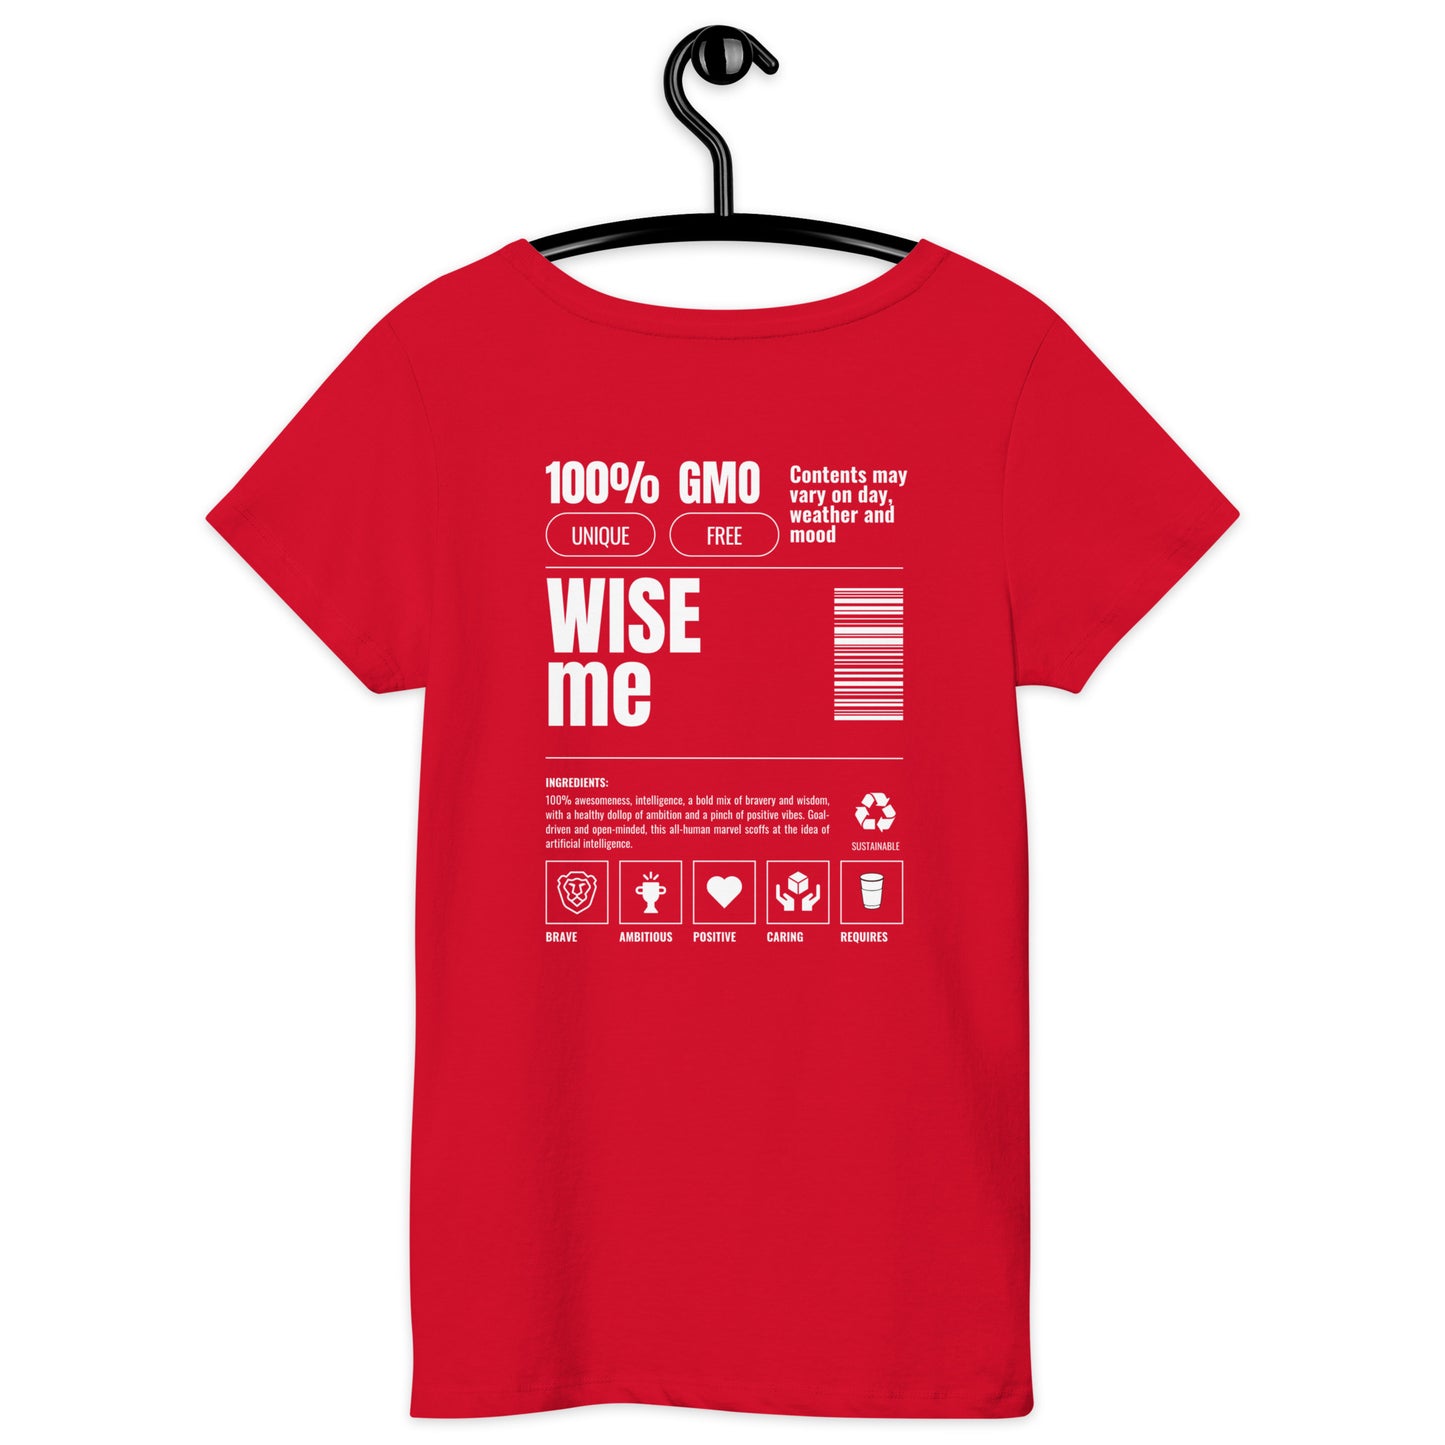 "WISE me ingridients" organic t-shirt